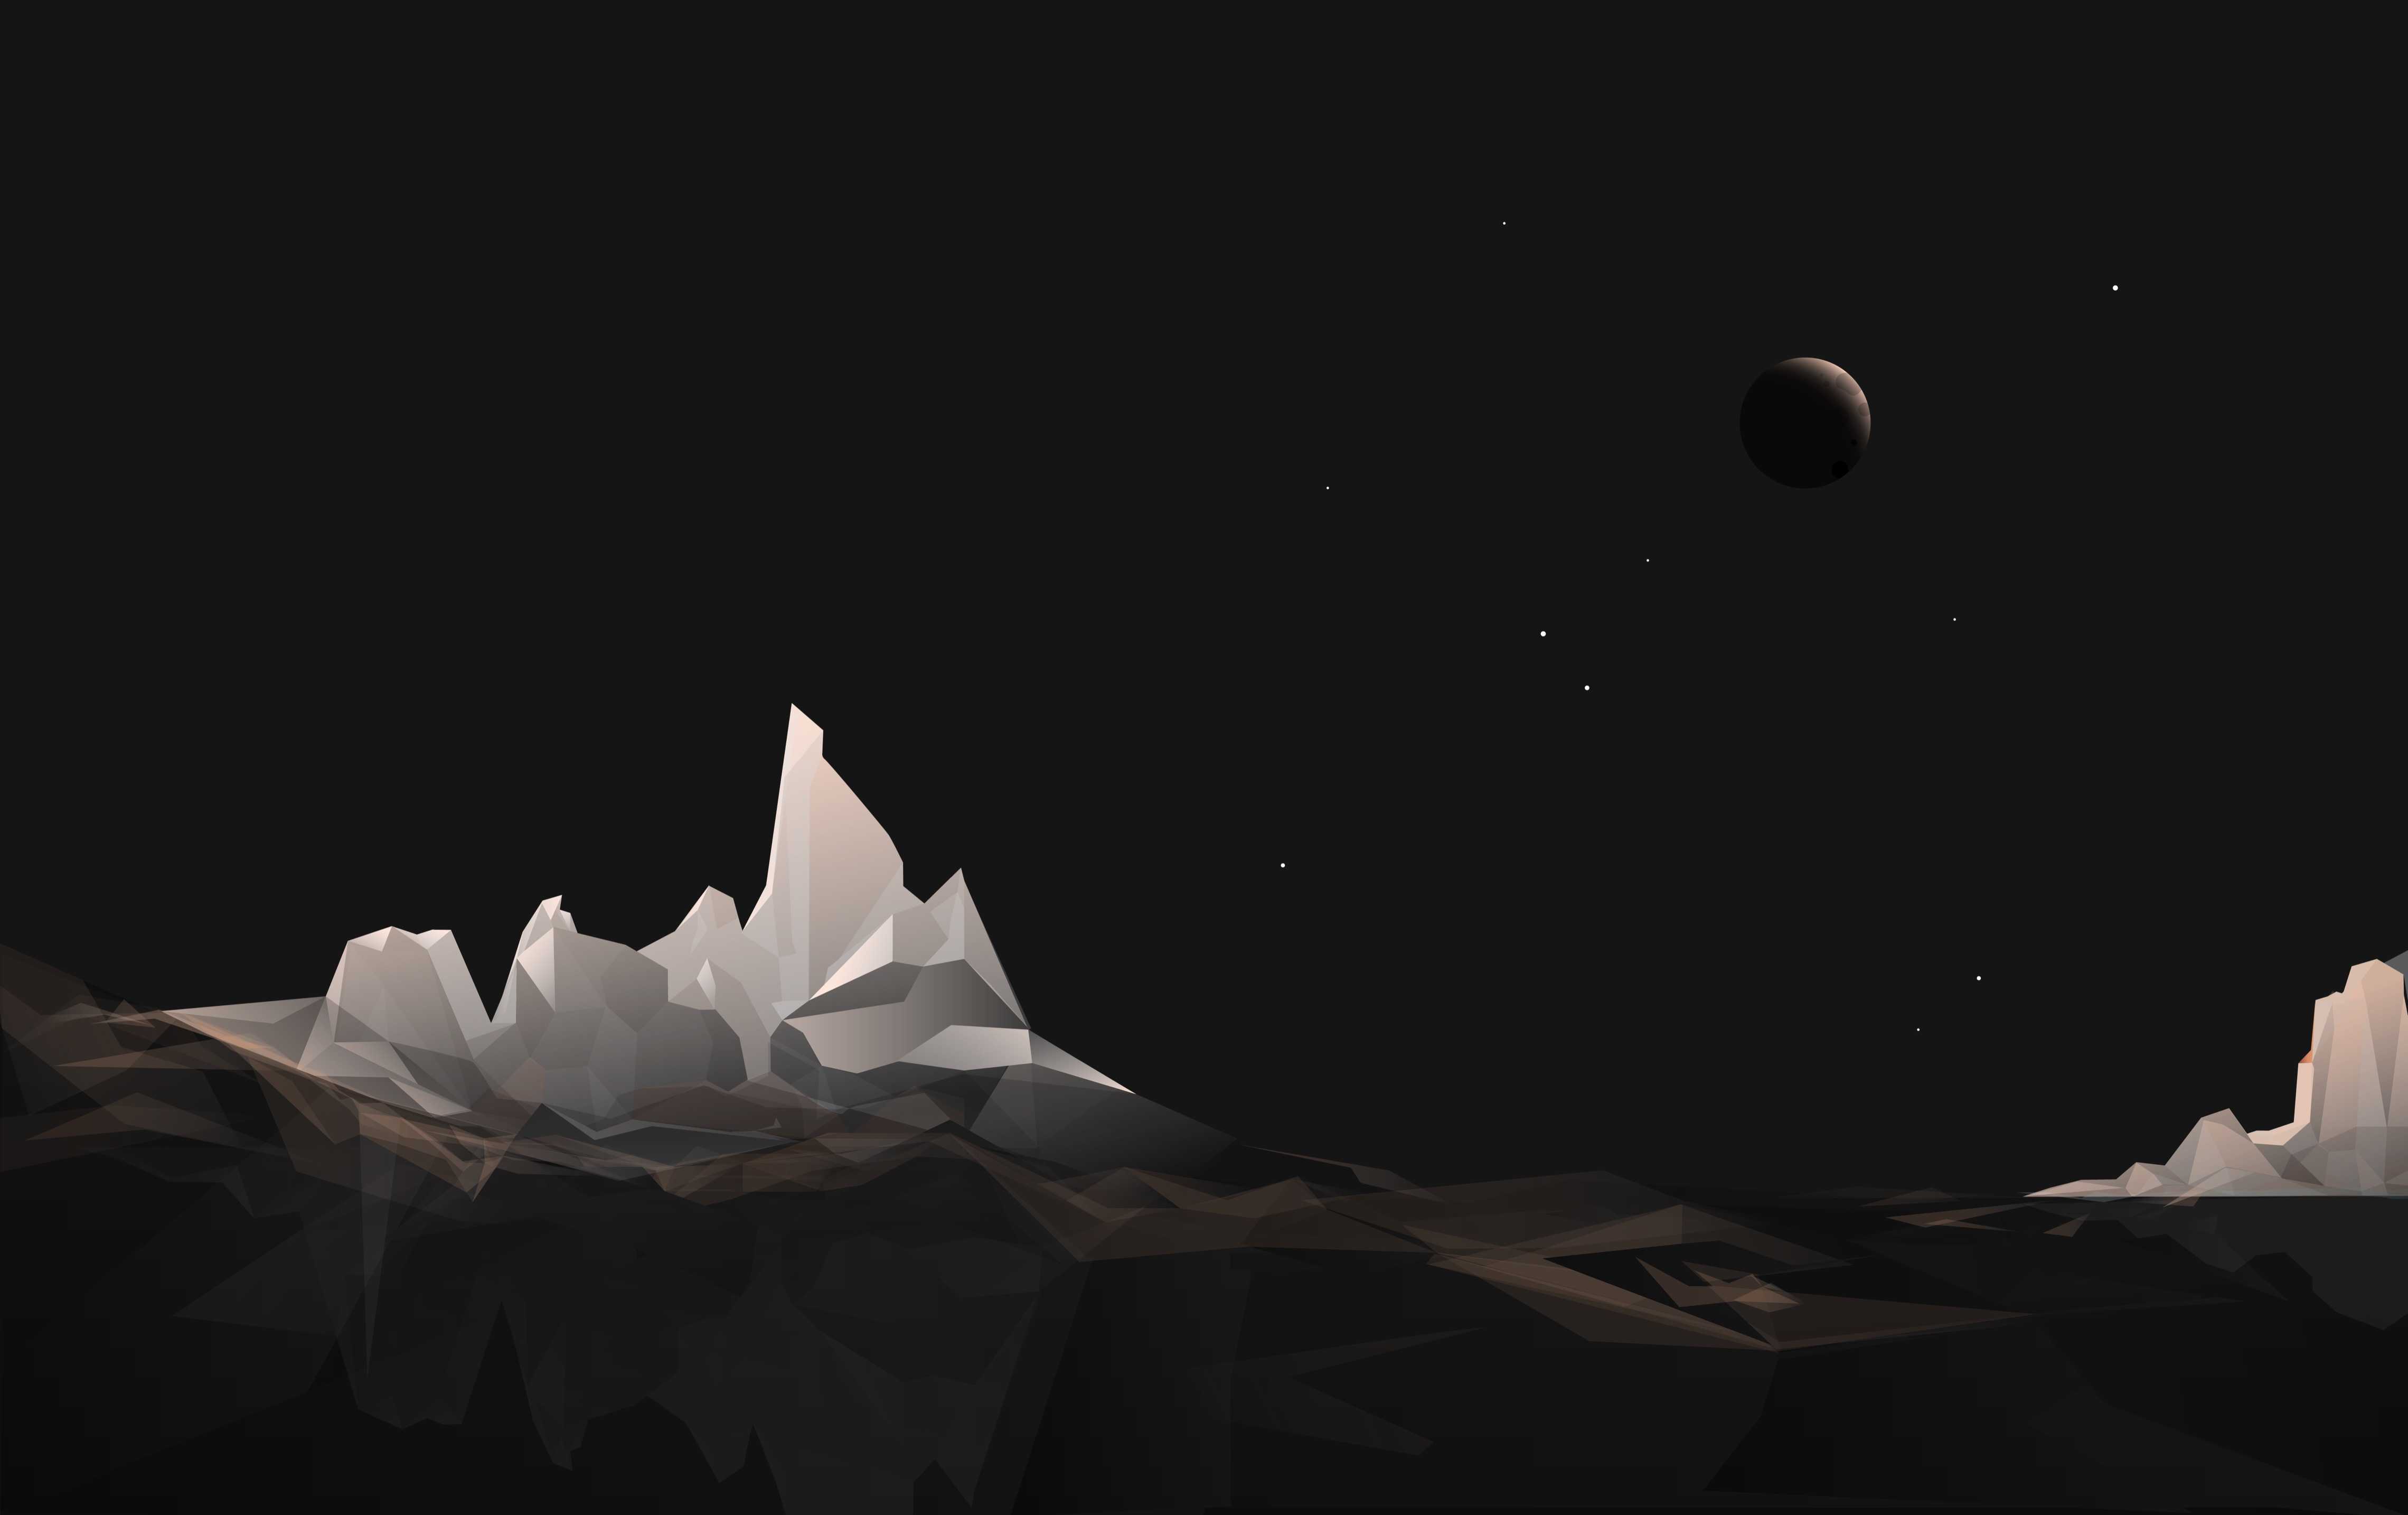 Berg und Mond in der Nacht